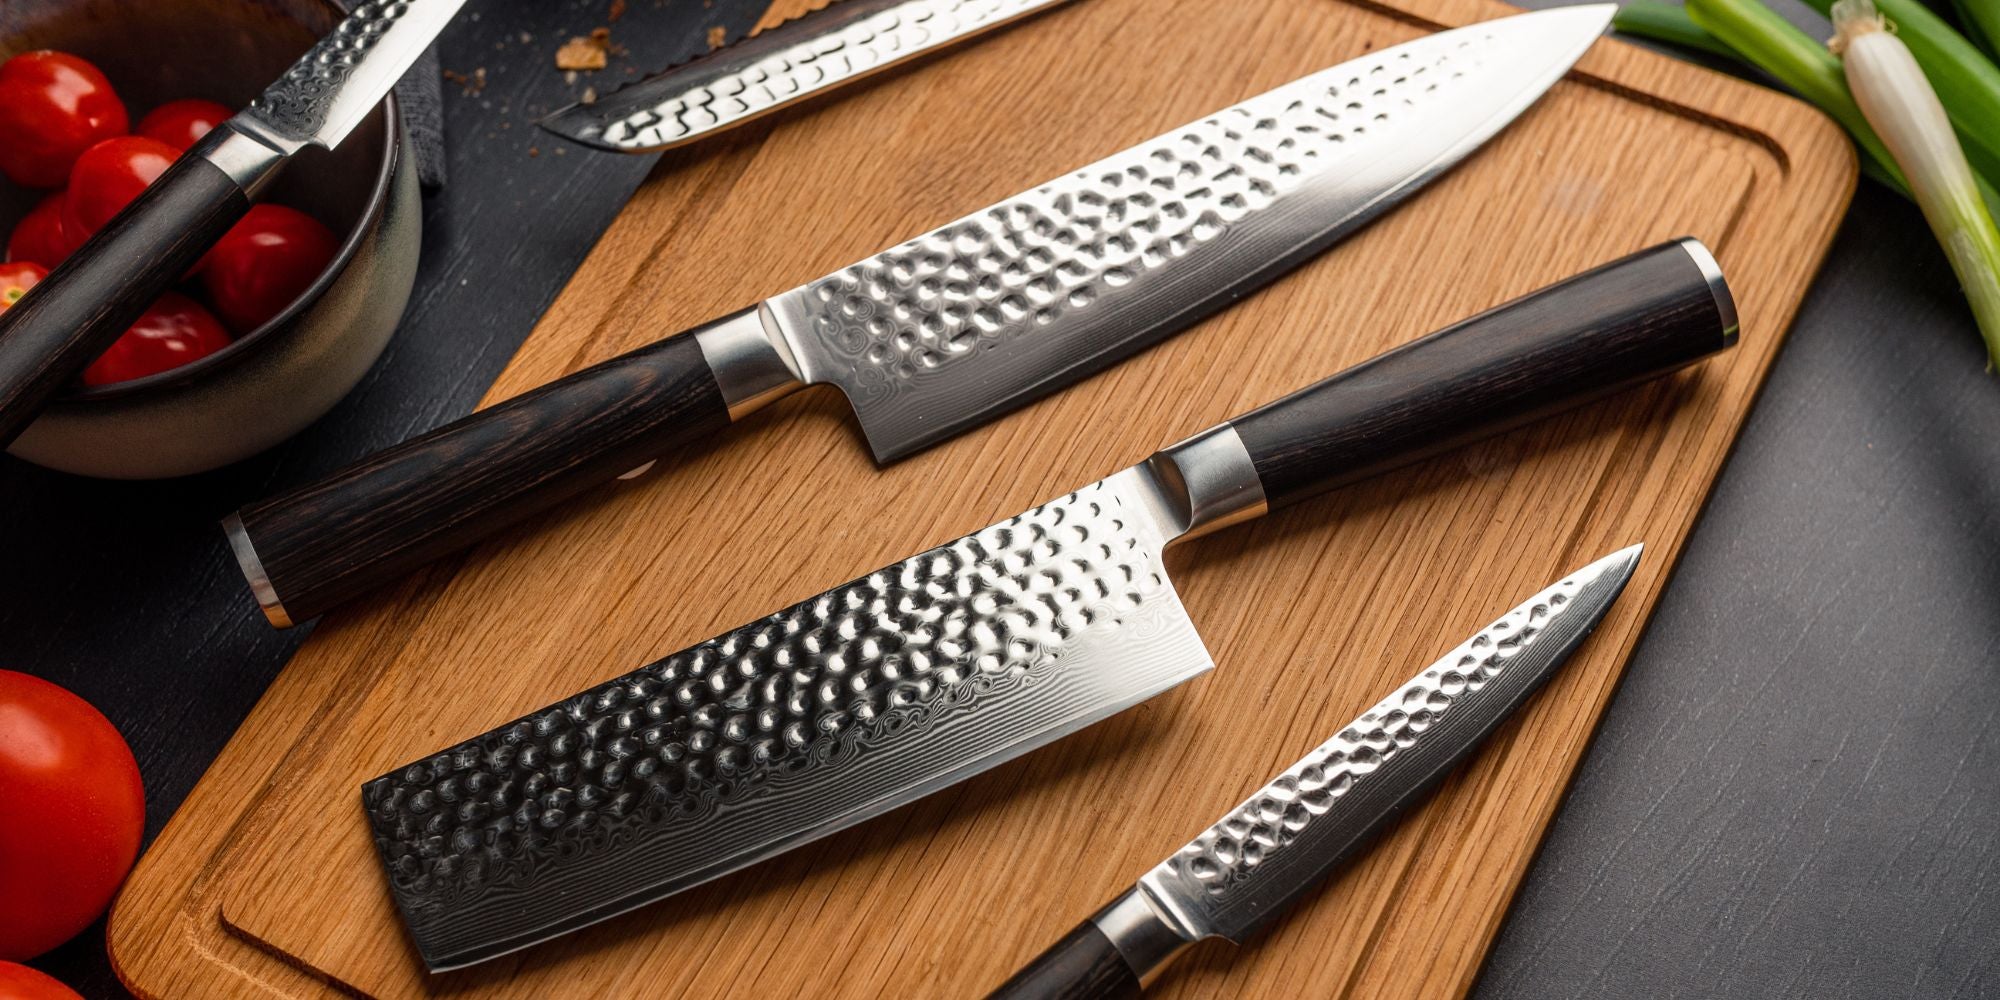 Rockwell-skalaen: Måleenhed til at måle hårdhed på knive